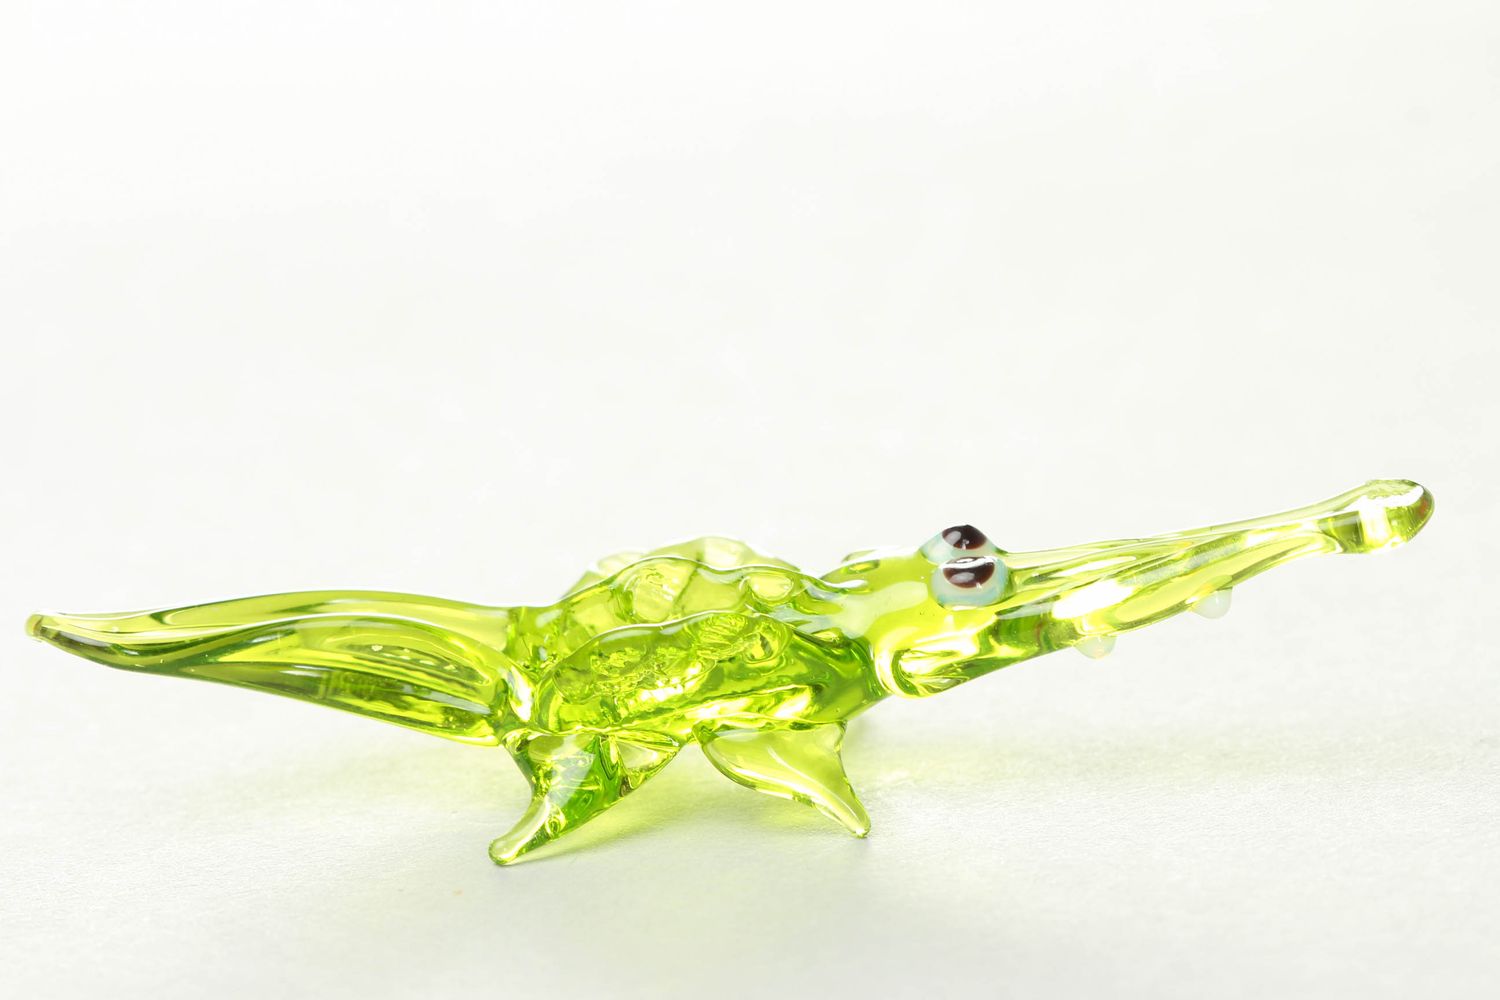 Homemade glass statuette Green Crocodile photo 2